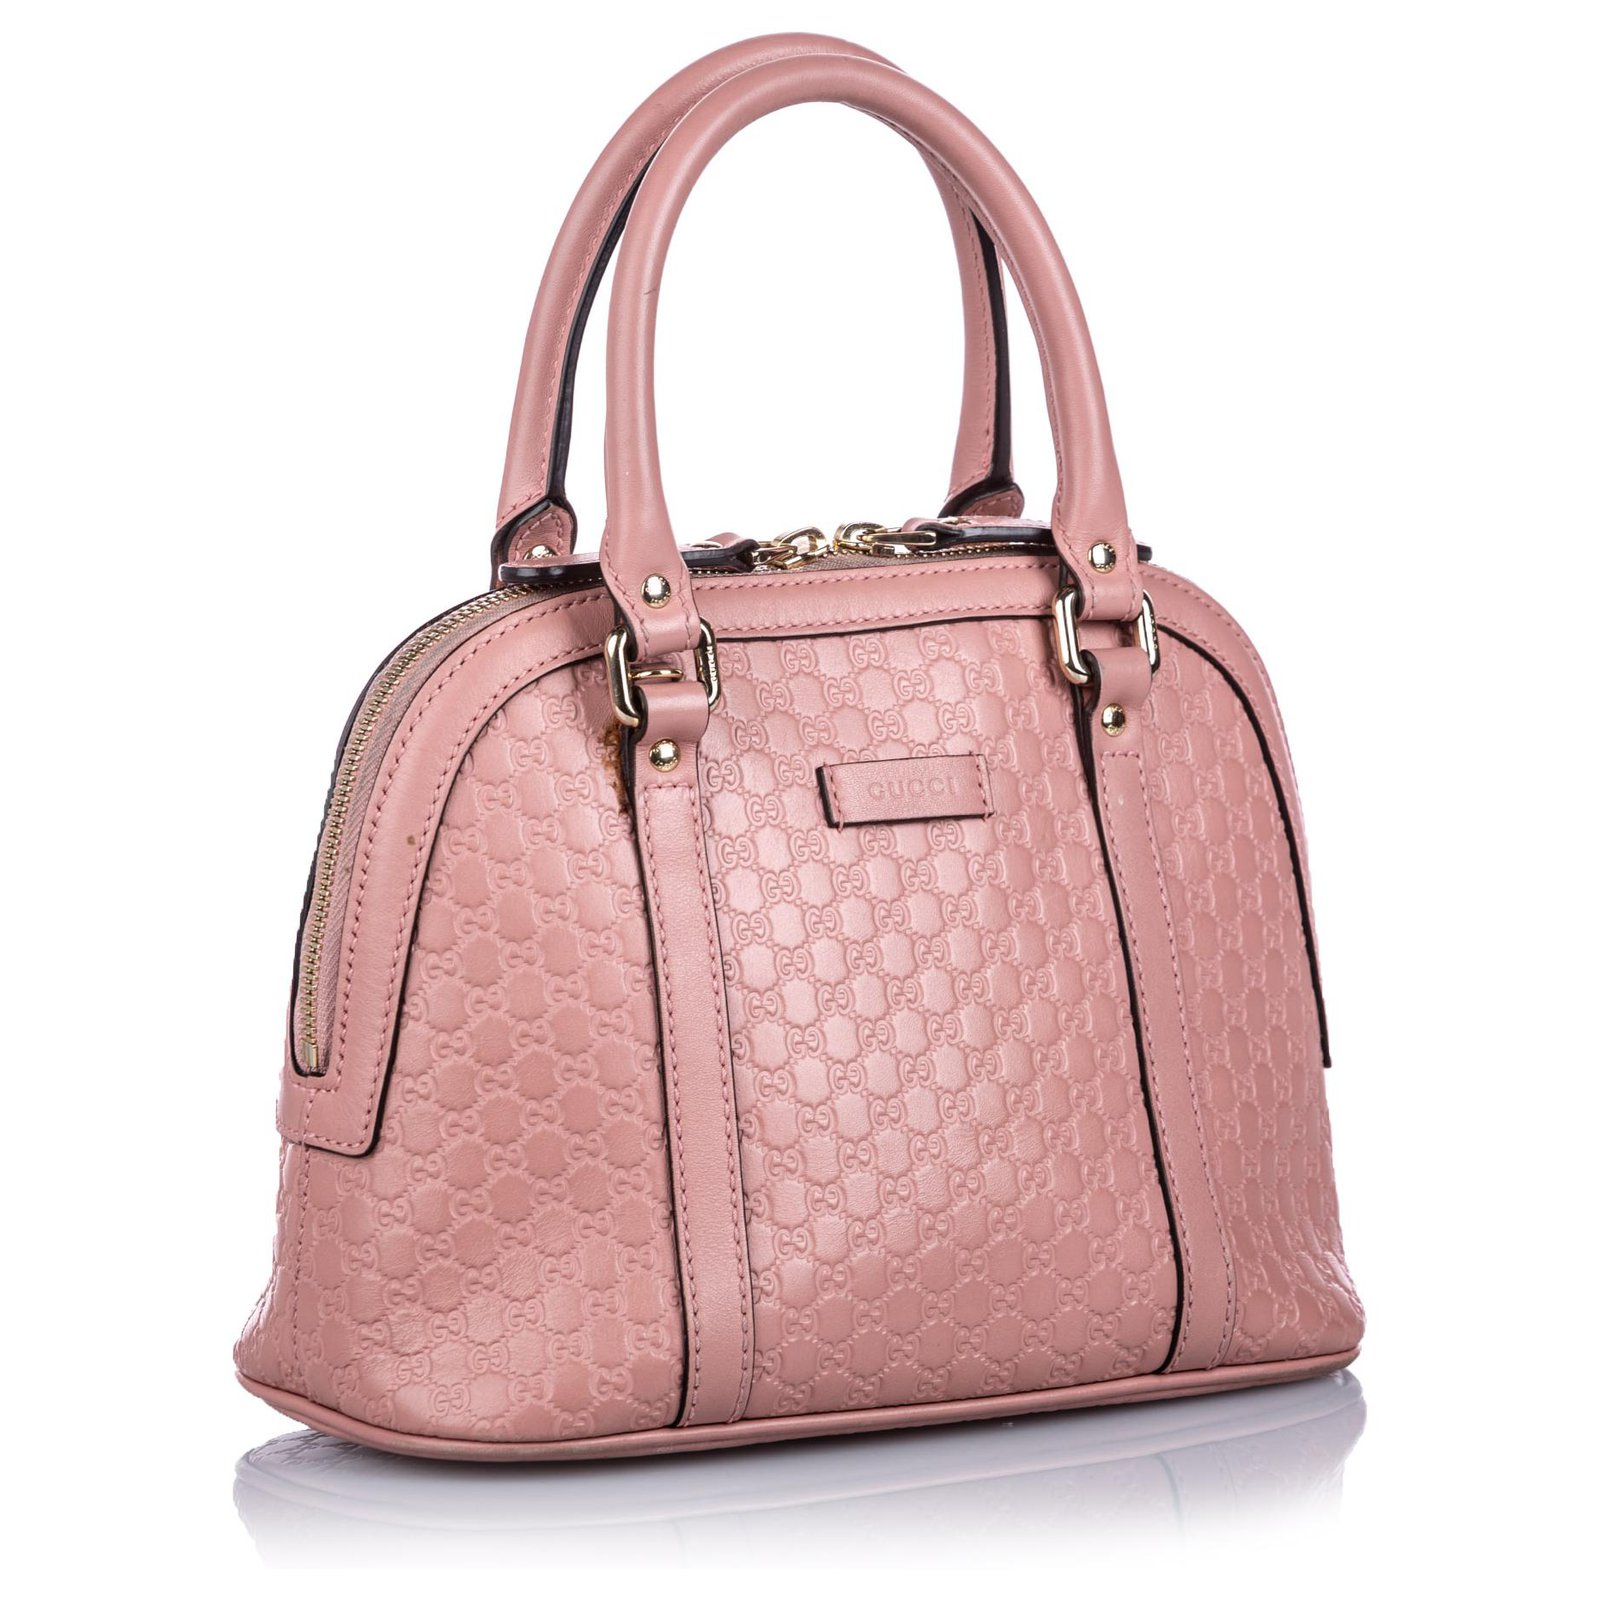 Gucci Pink Microguccissima Leather Mini Dome Bag Gucci